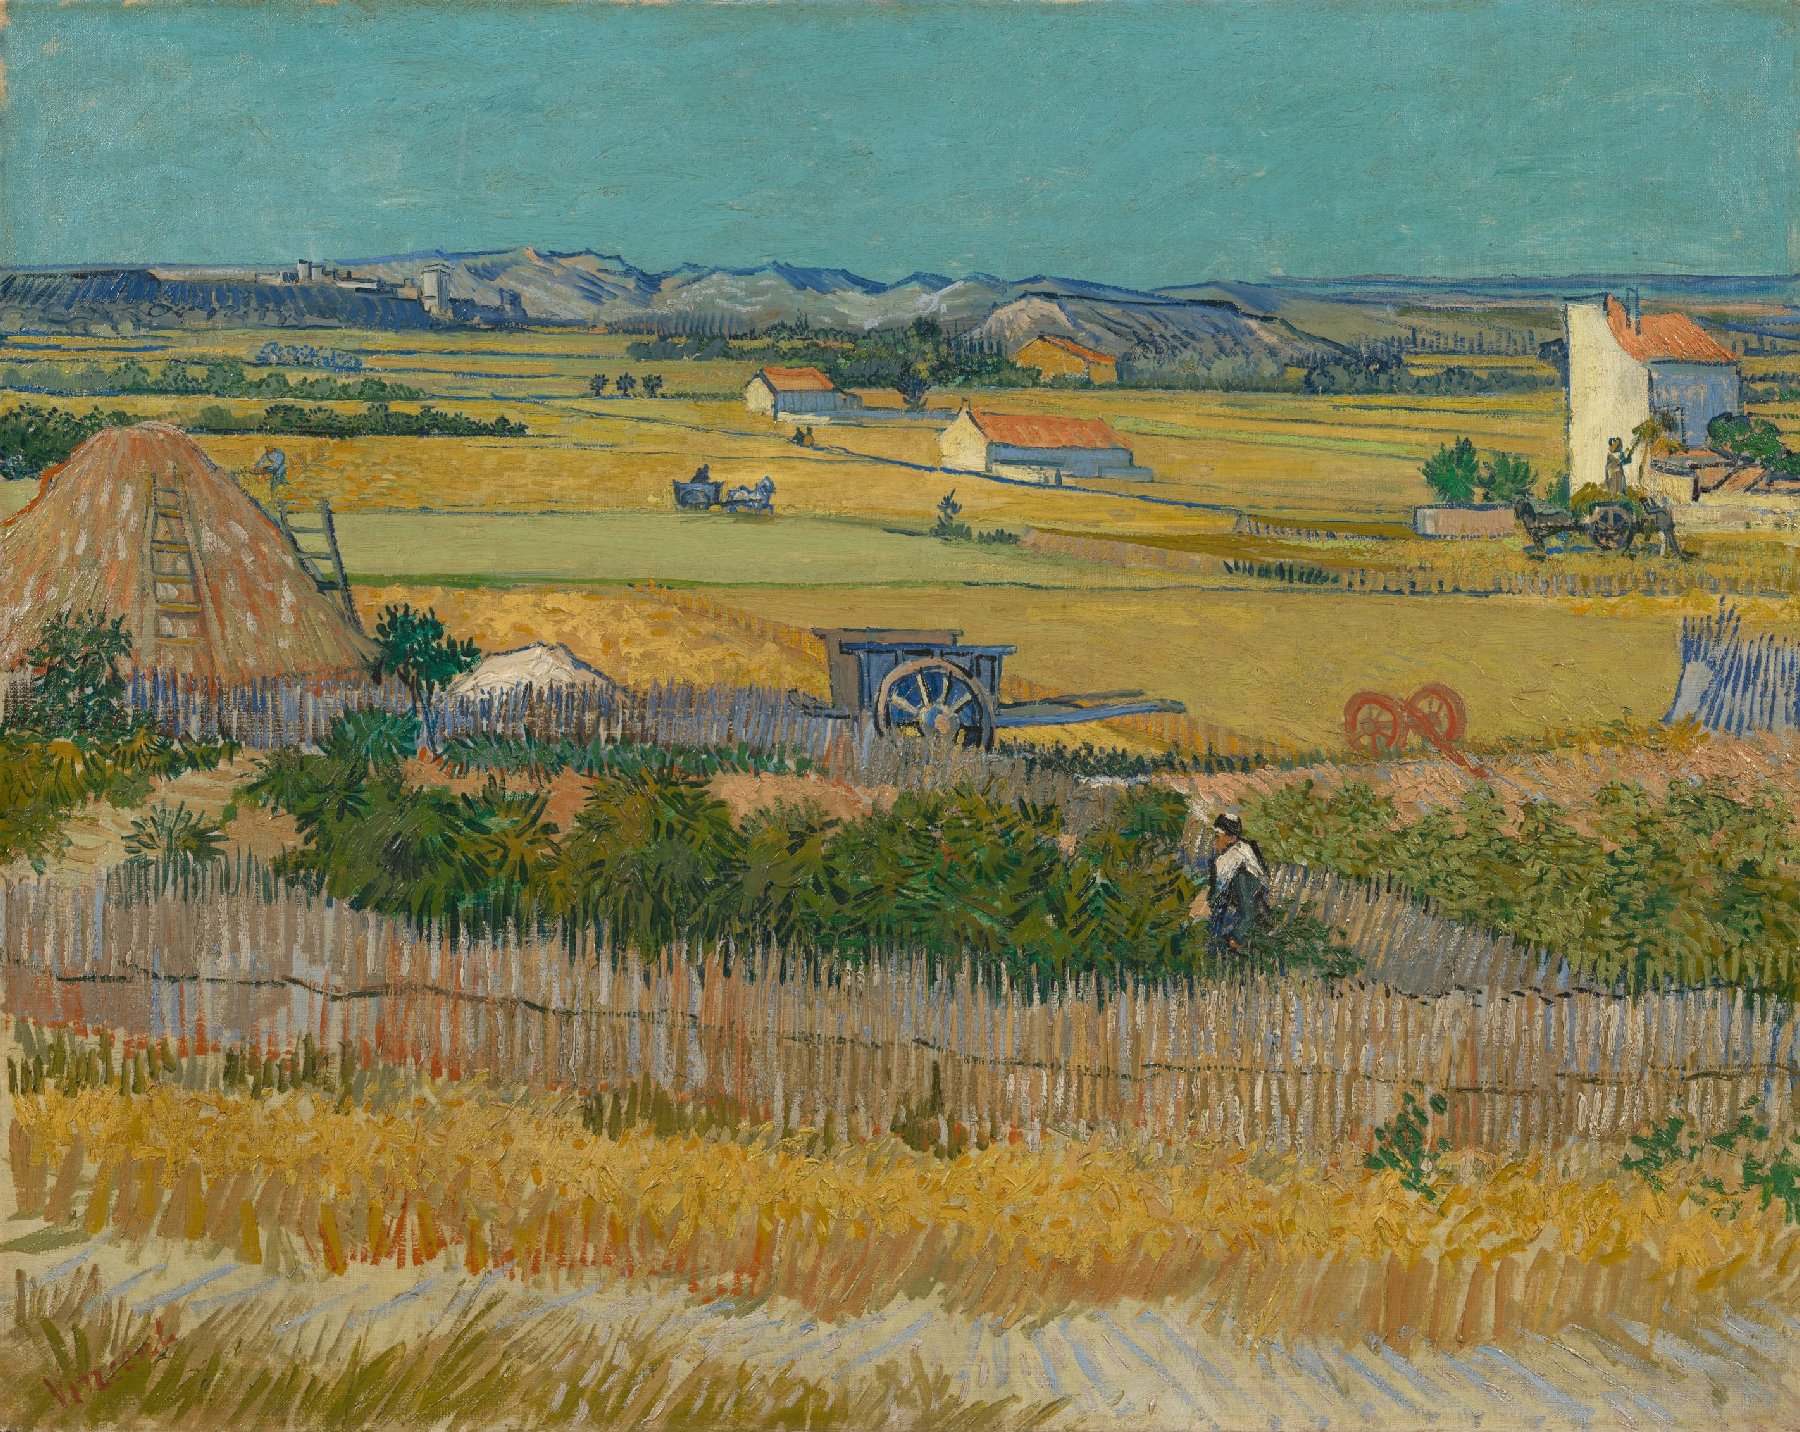 Sklizeň by Vincent van Gogh - Červen 1888 - 73,4 cm x 91,8 cm 